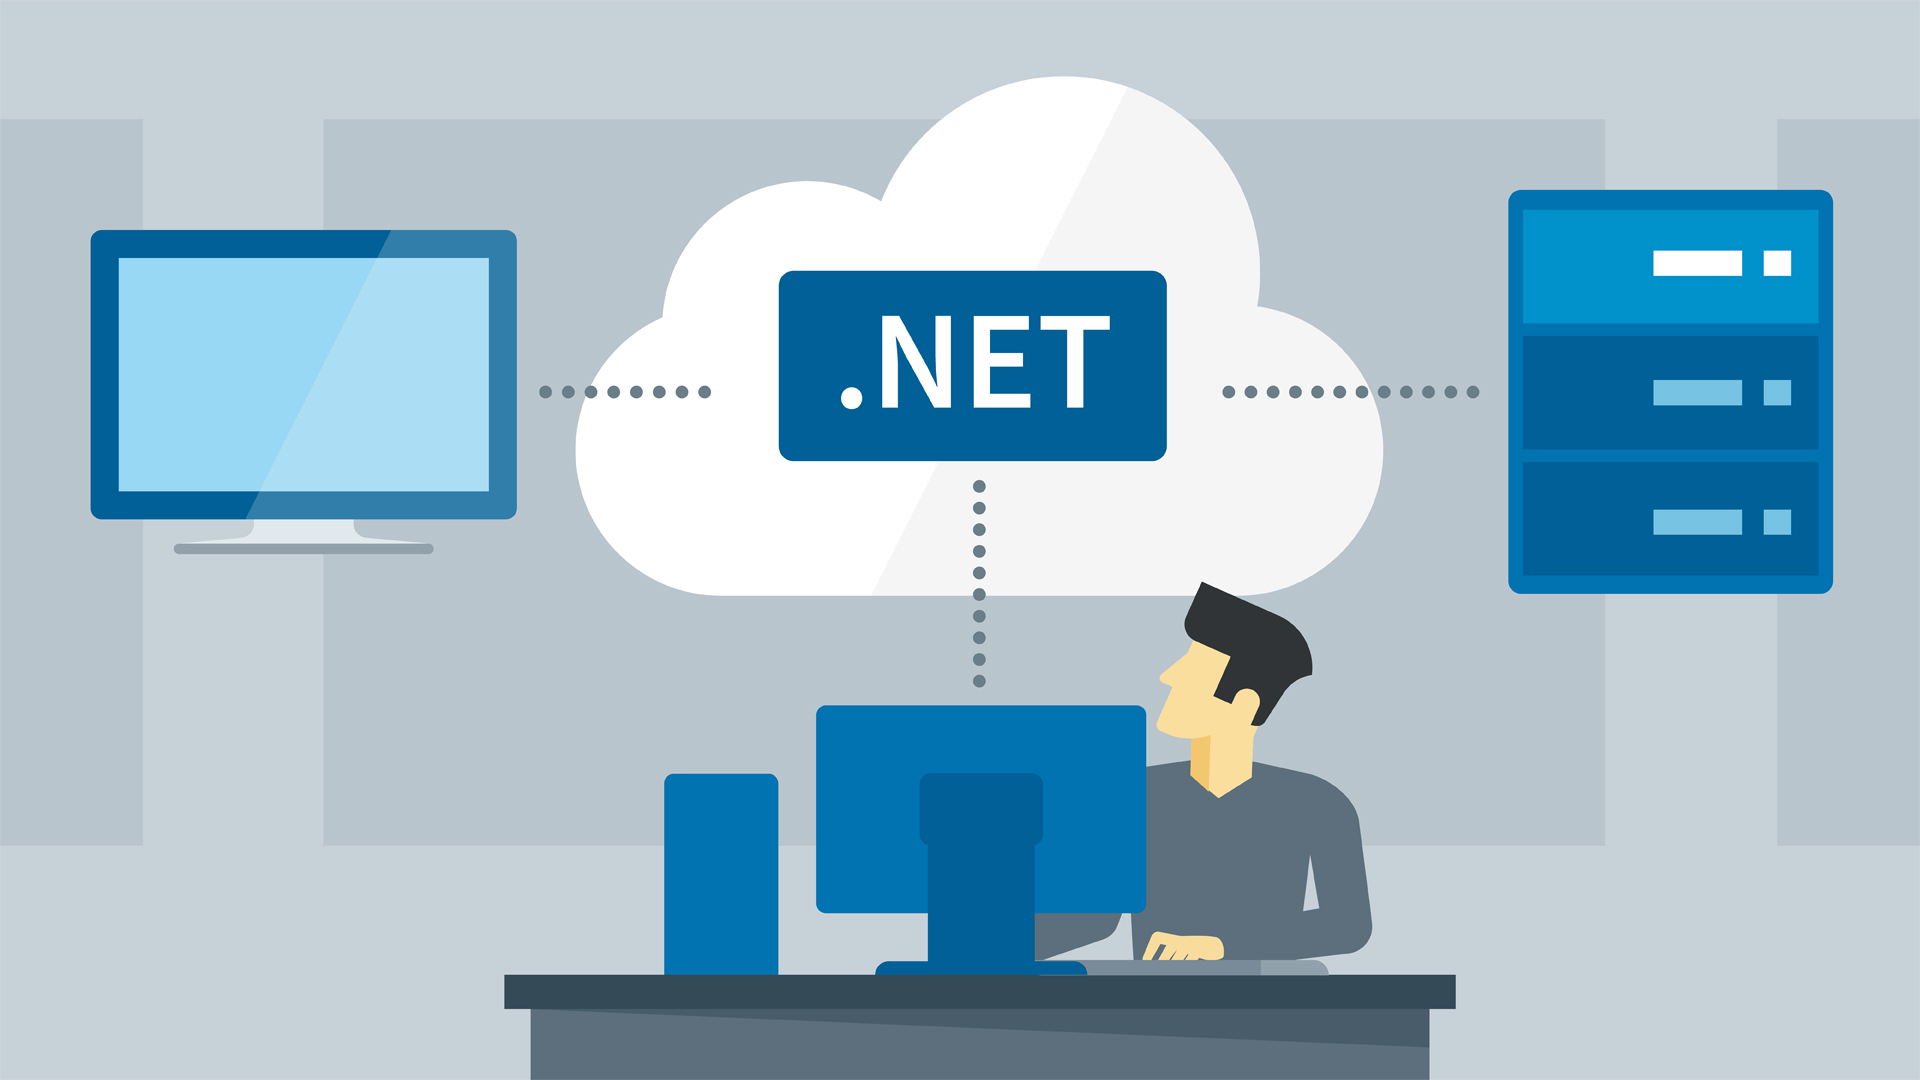 .net application development